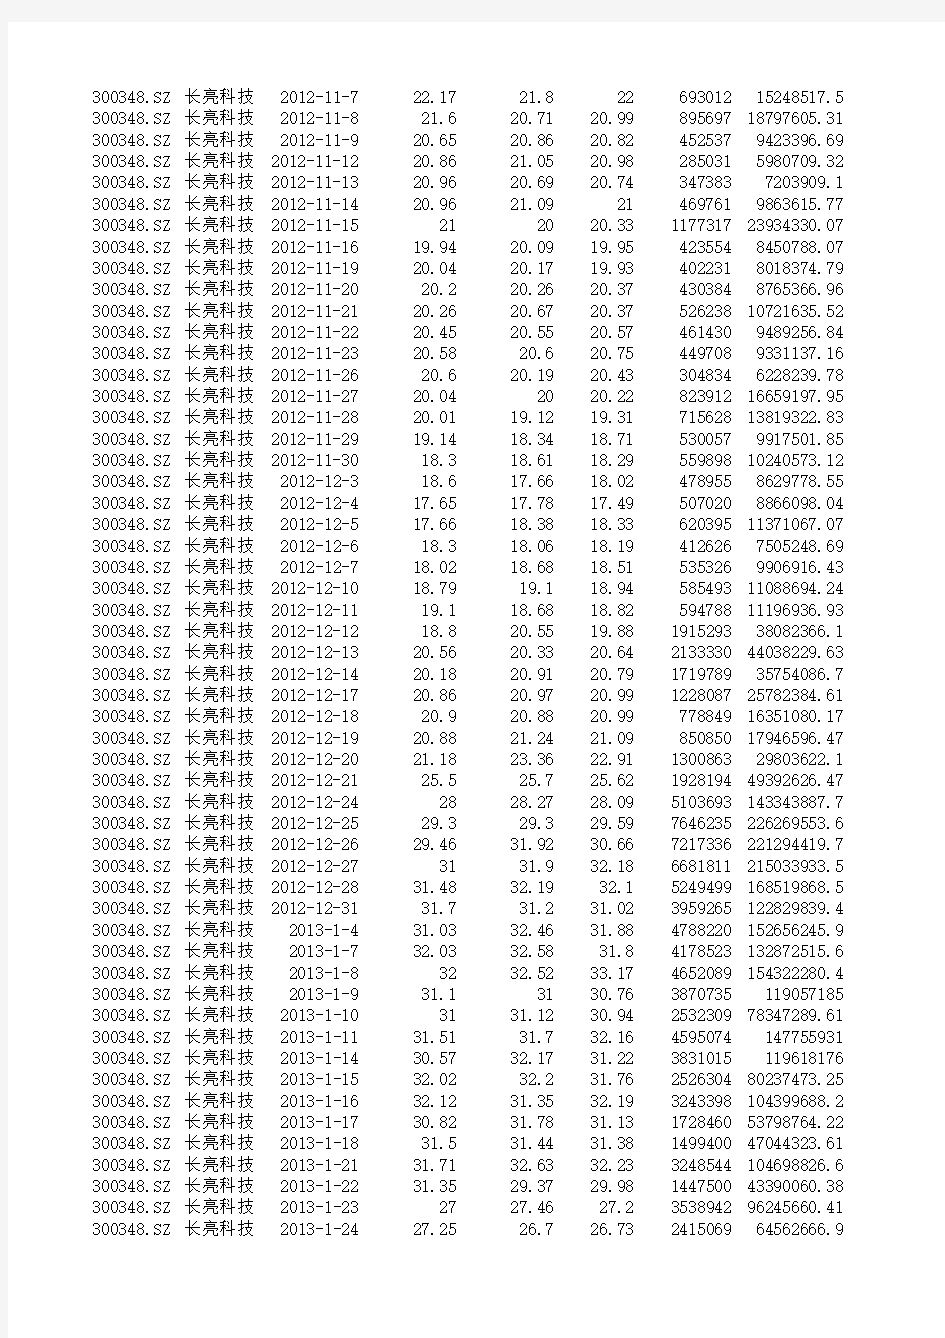 上市日-2013年12 长亮科技 股票数据